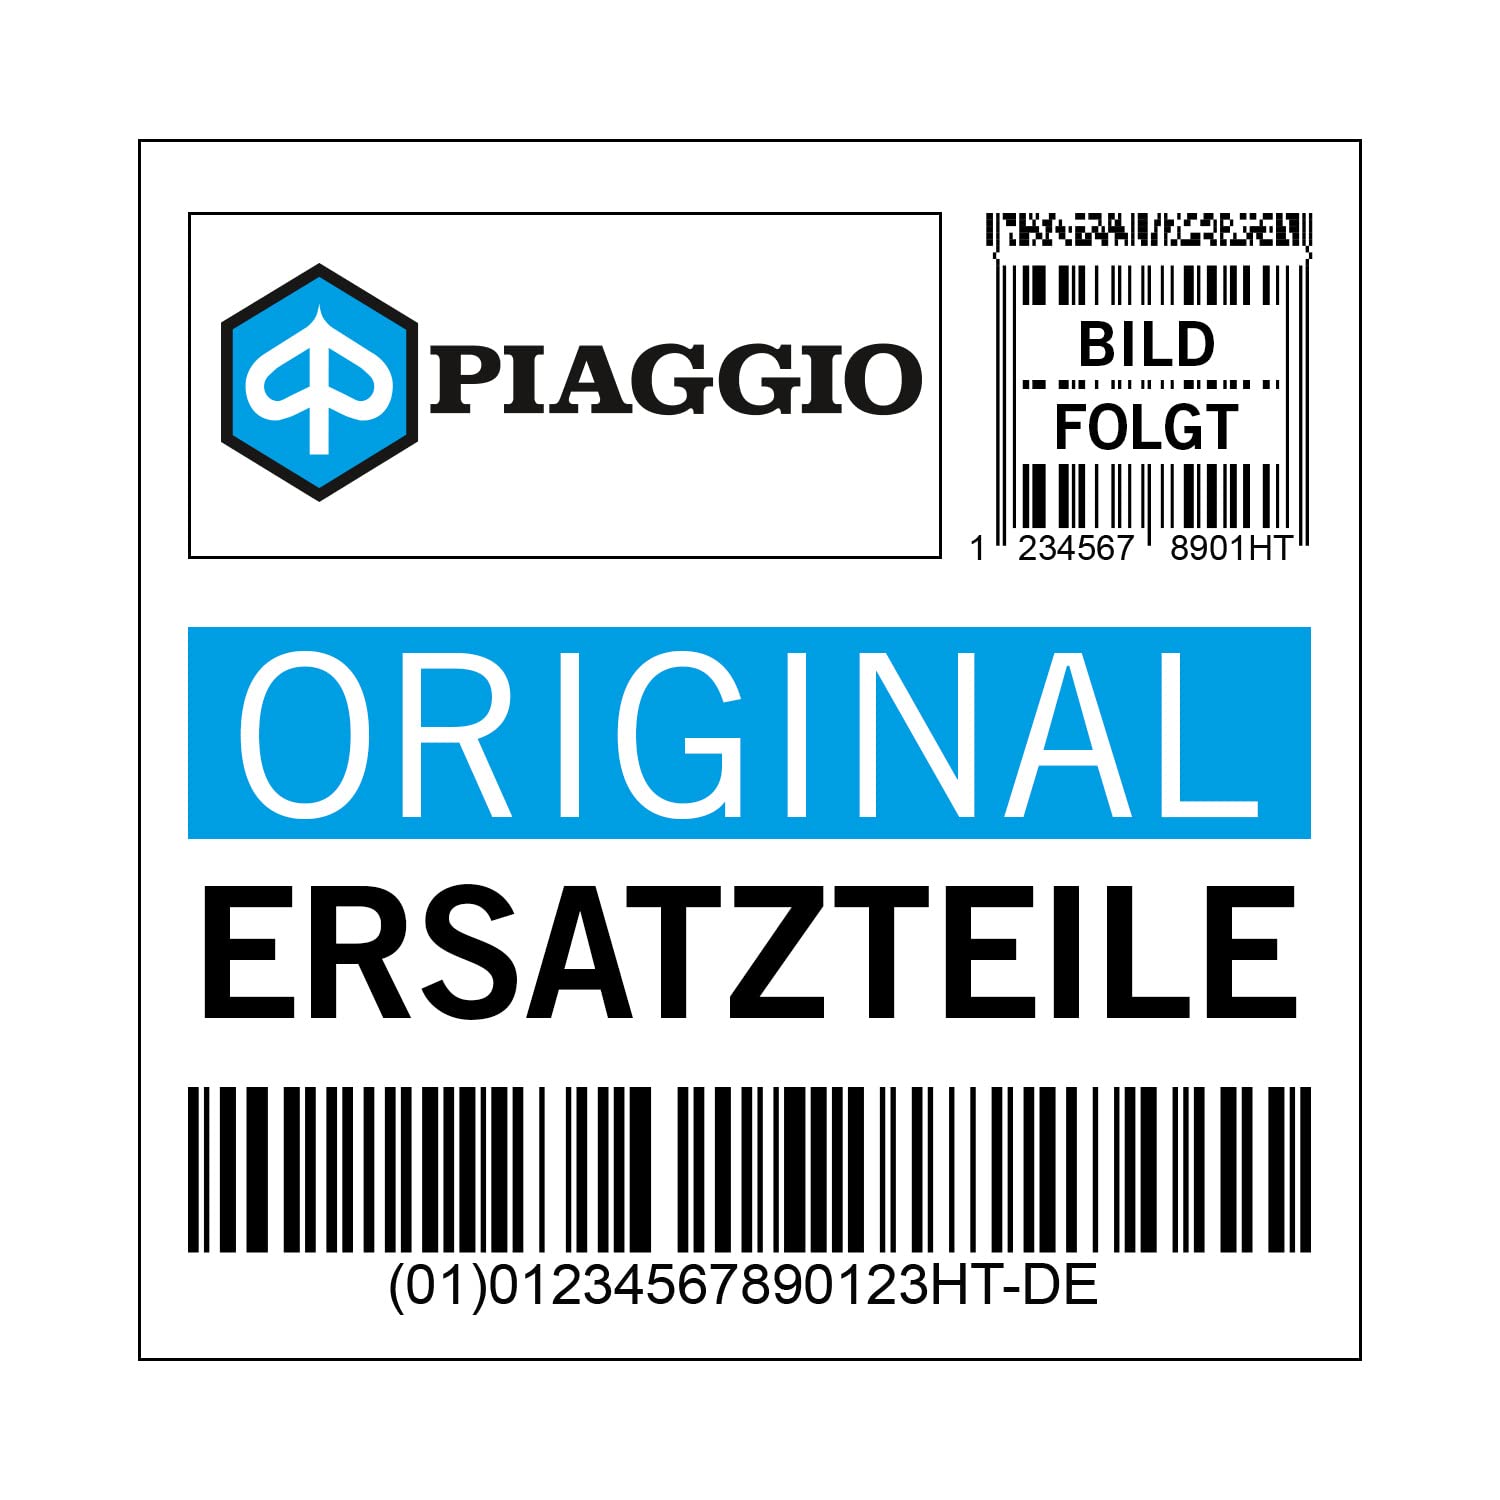 Inspektionsklappe Piaggio Servicedeckel Zündkerze, schwarz, 90 schwarz glänzend 094, 6573960090 von Maxtuned